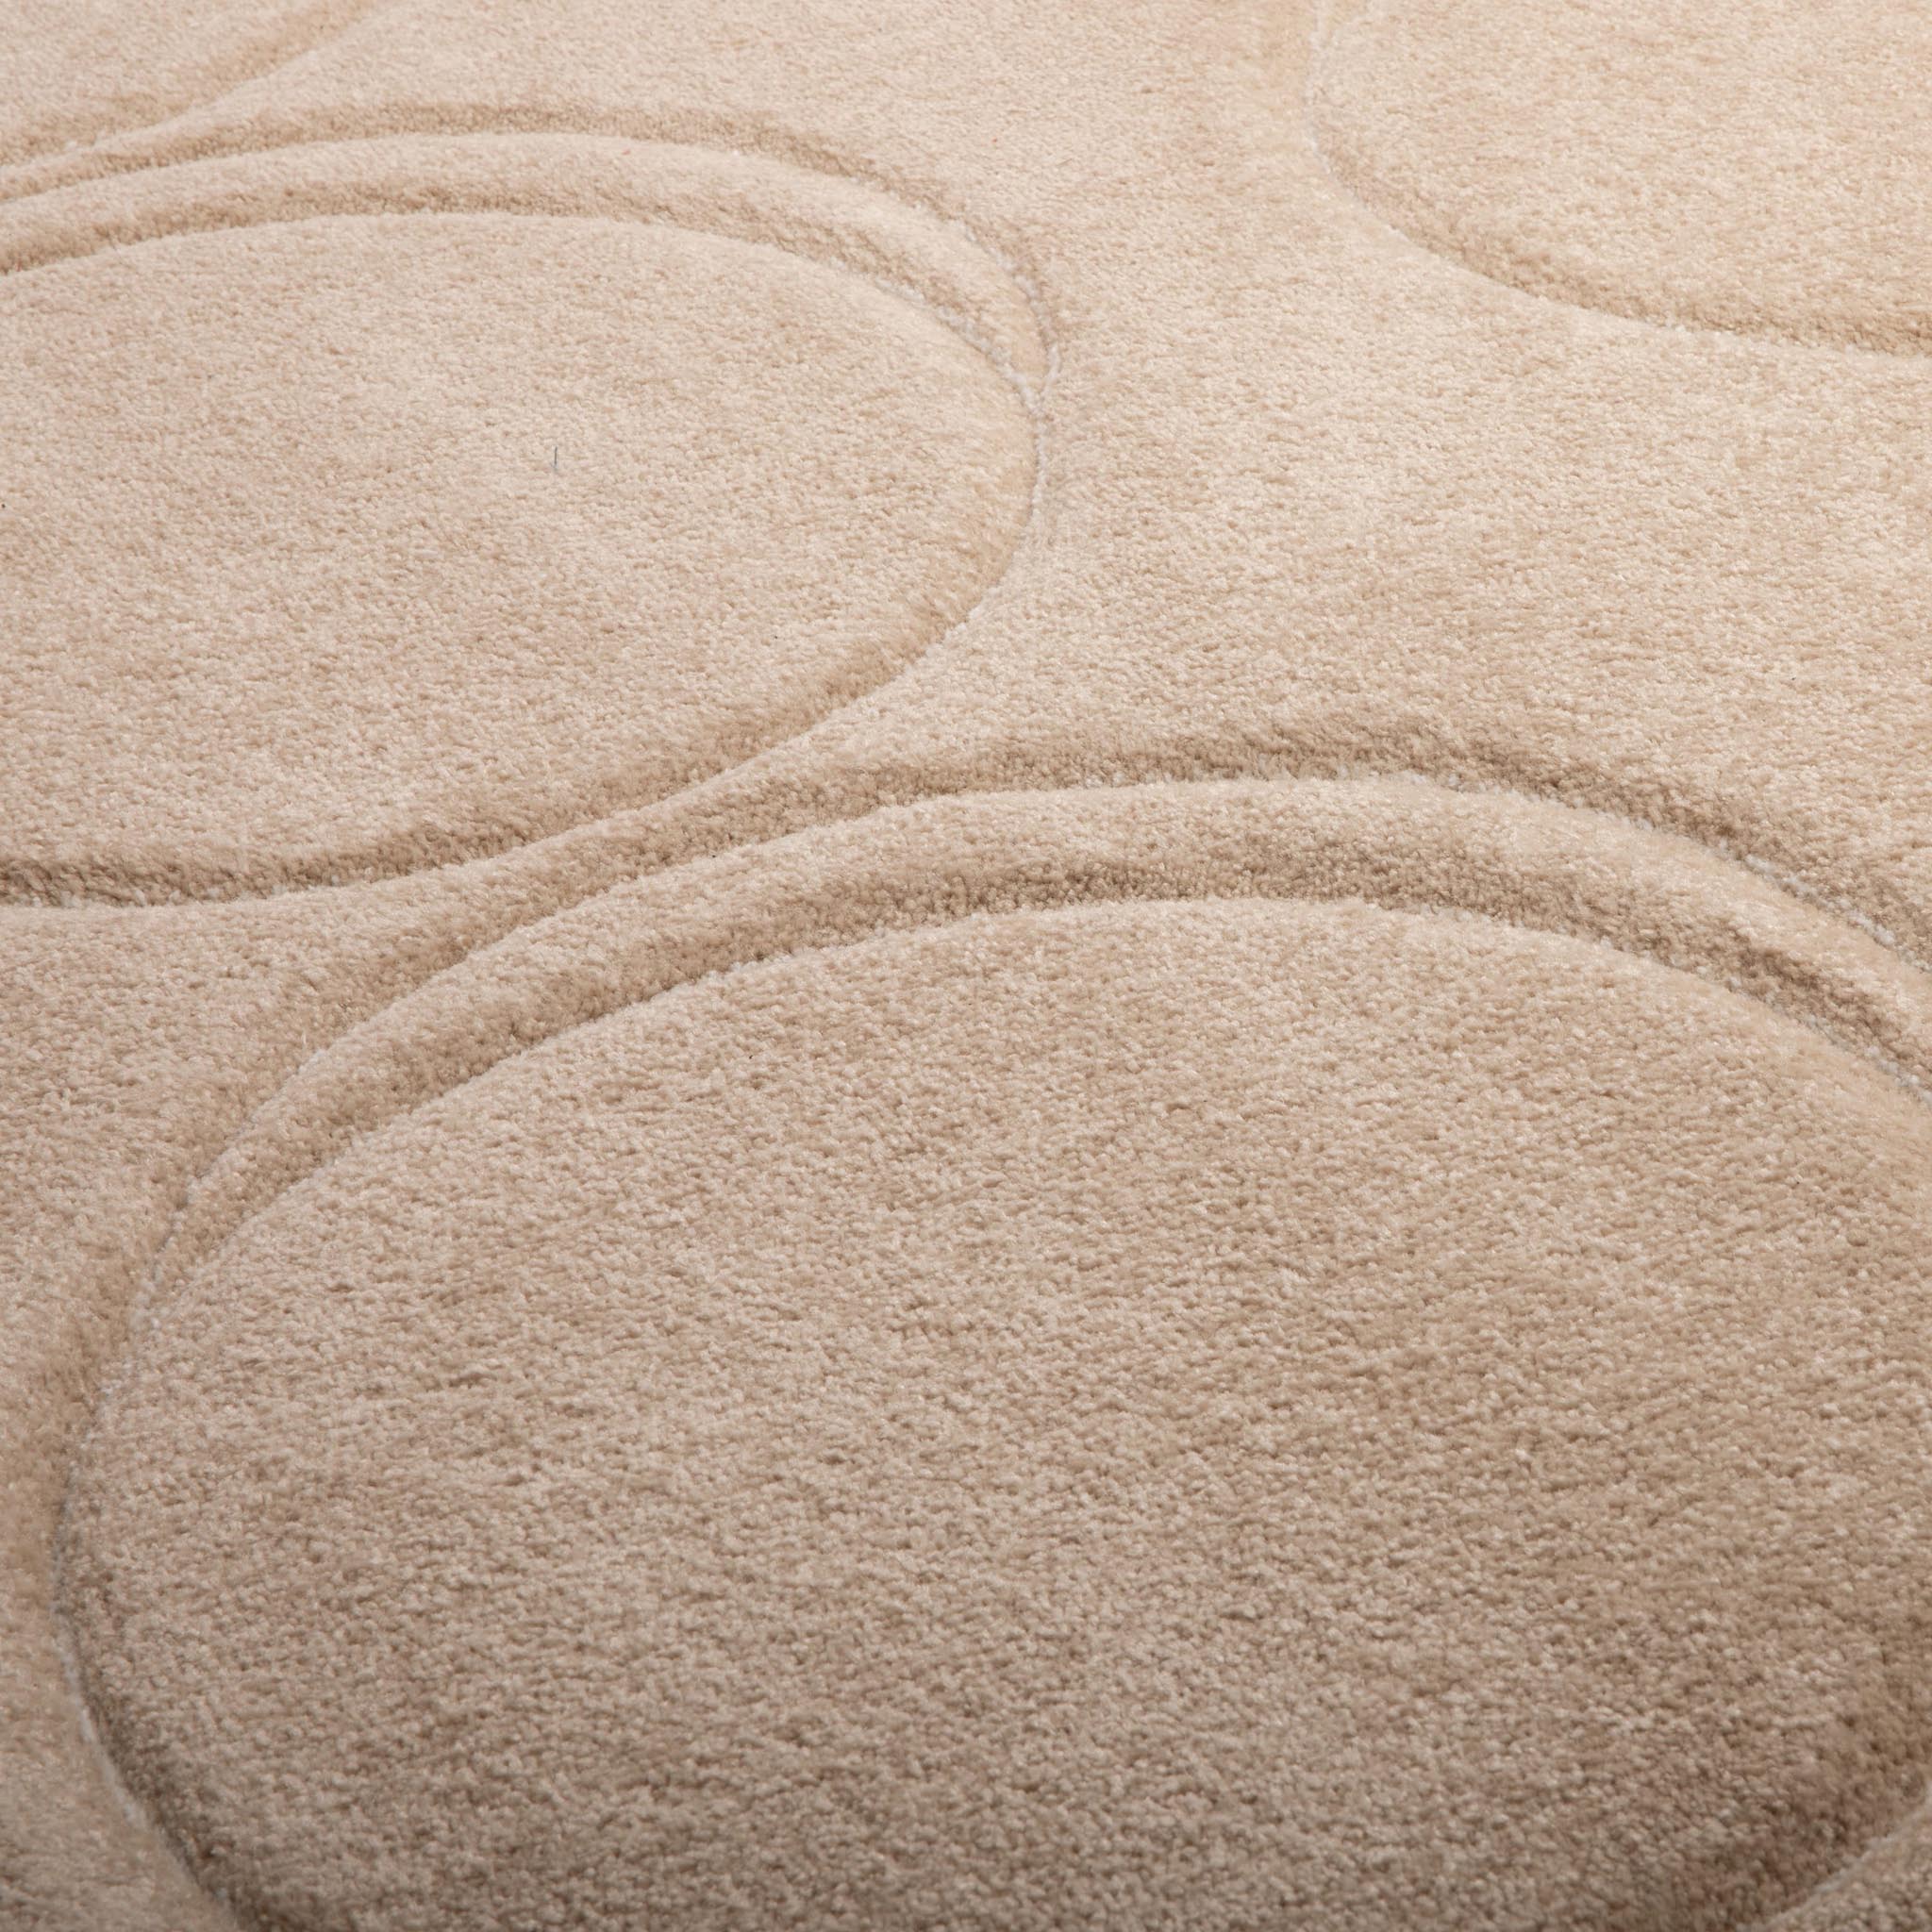 Fatboy Dot Carpet Indoor Rug in Creamy Camel Color